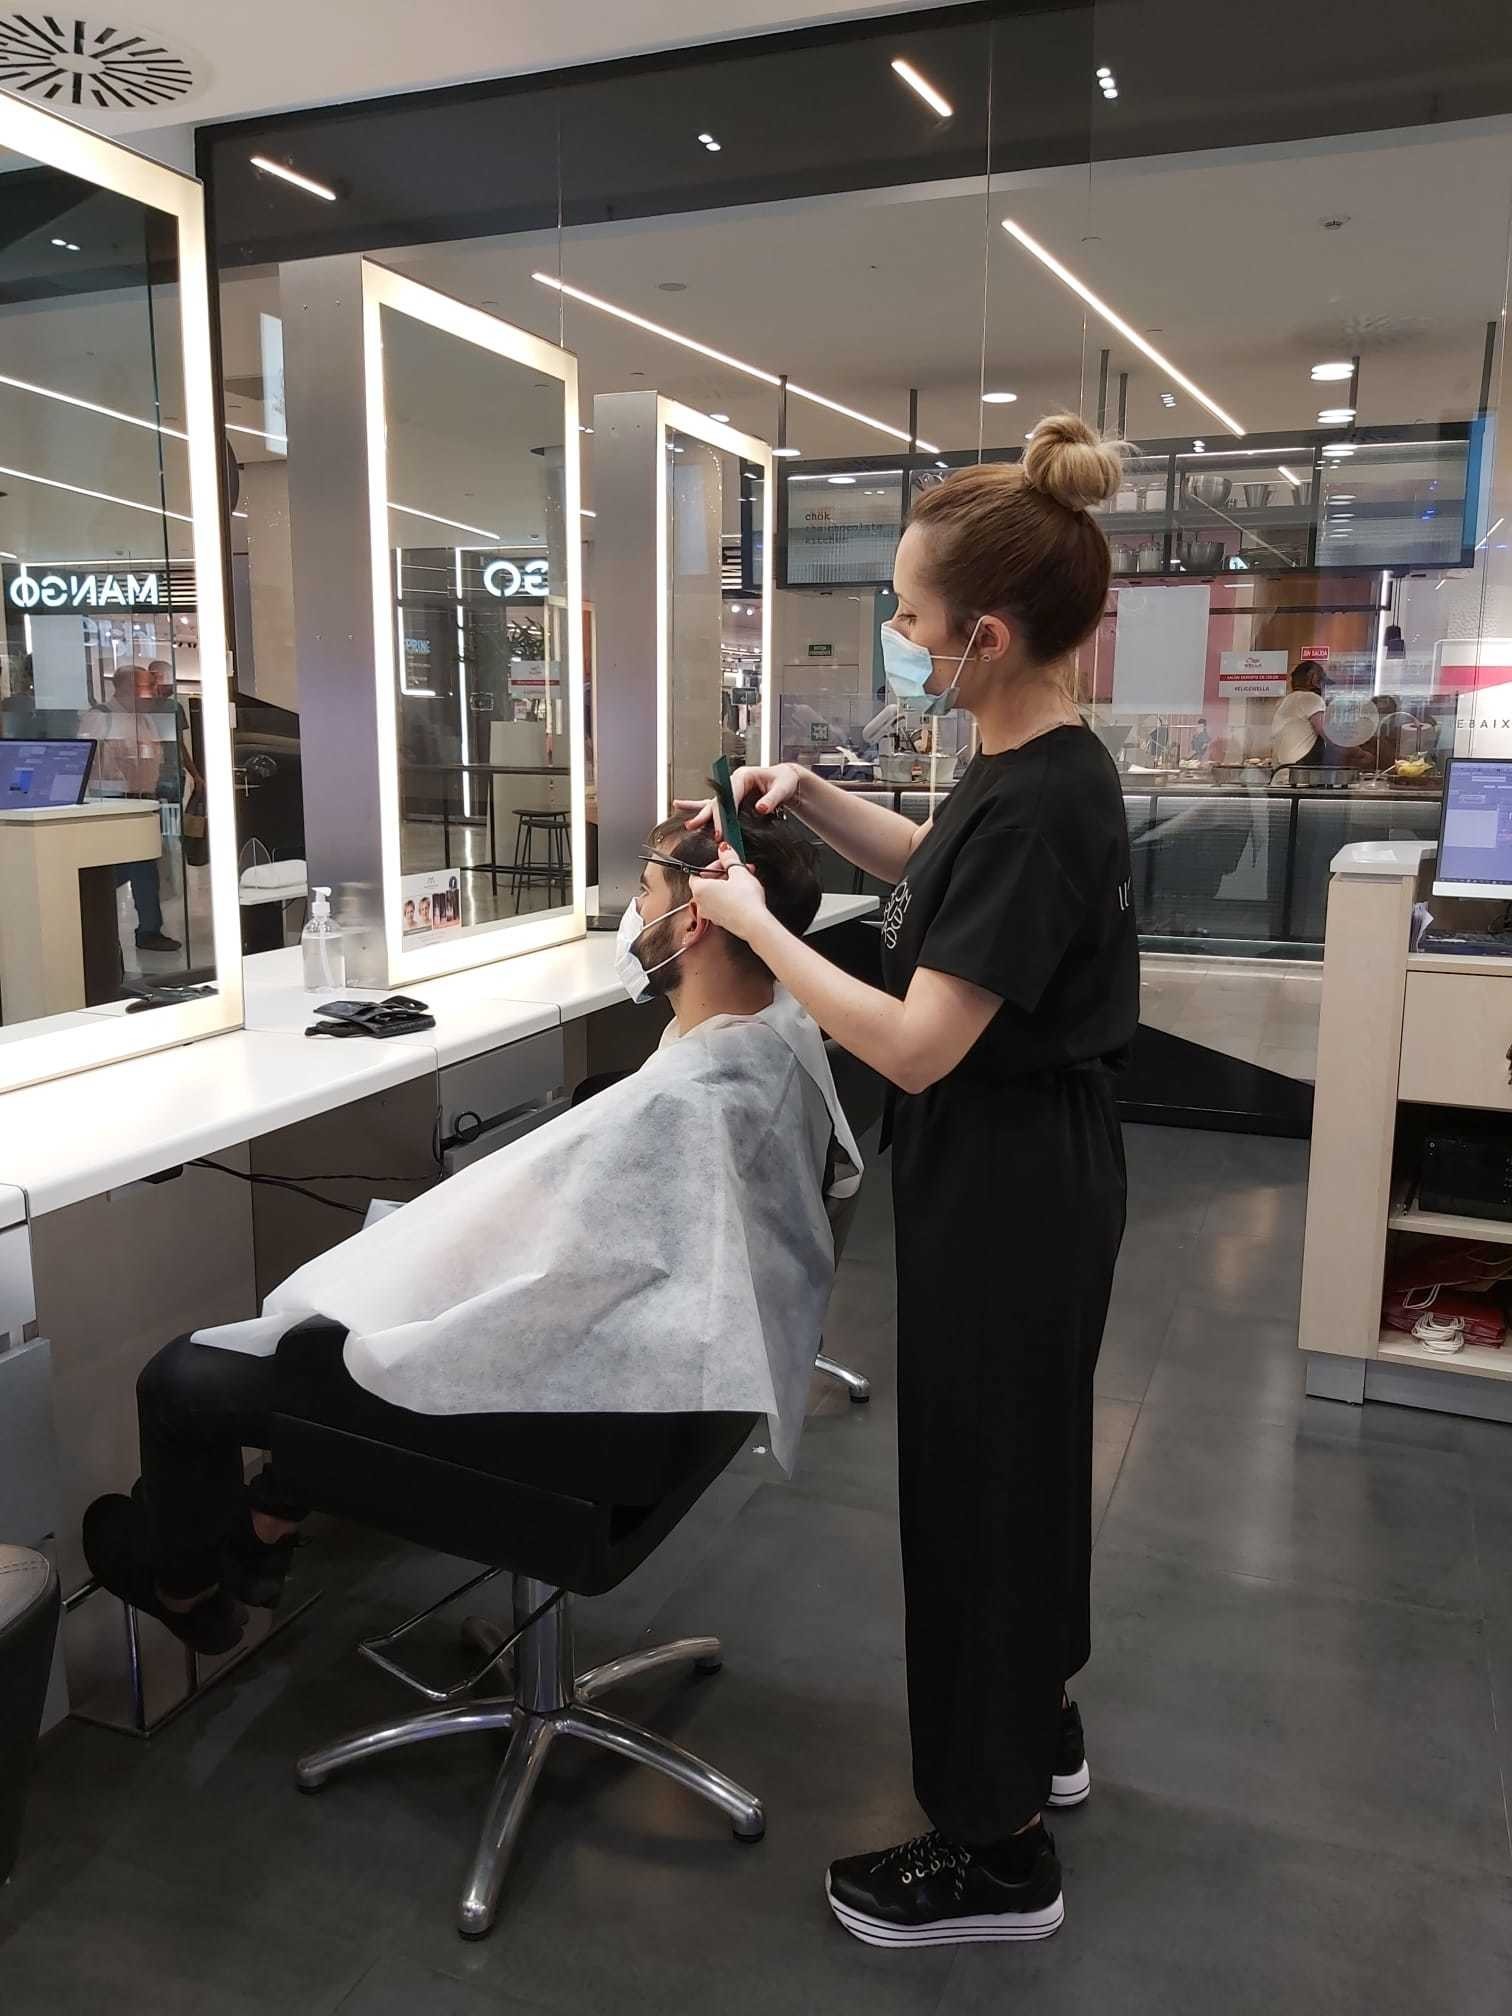 “Volviendo a la nueva normalidad” la peluquería se adapta aplicando todos sus protocolos de securidad.